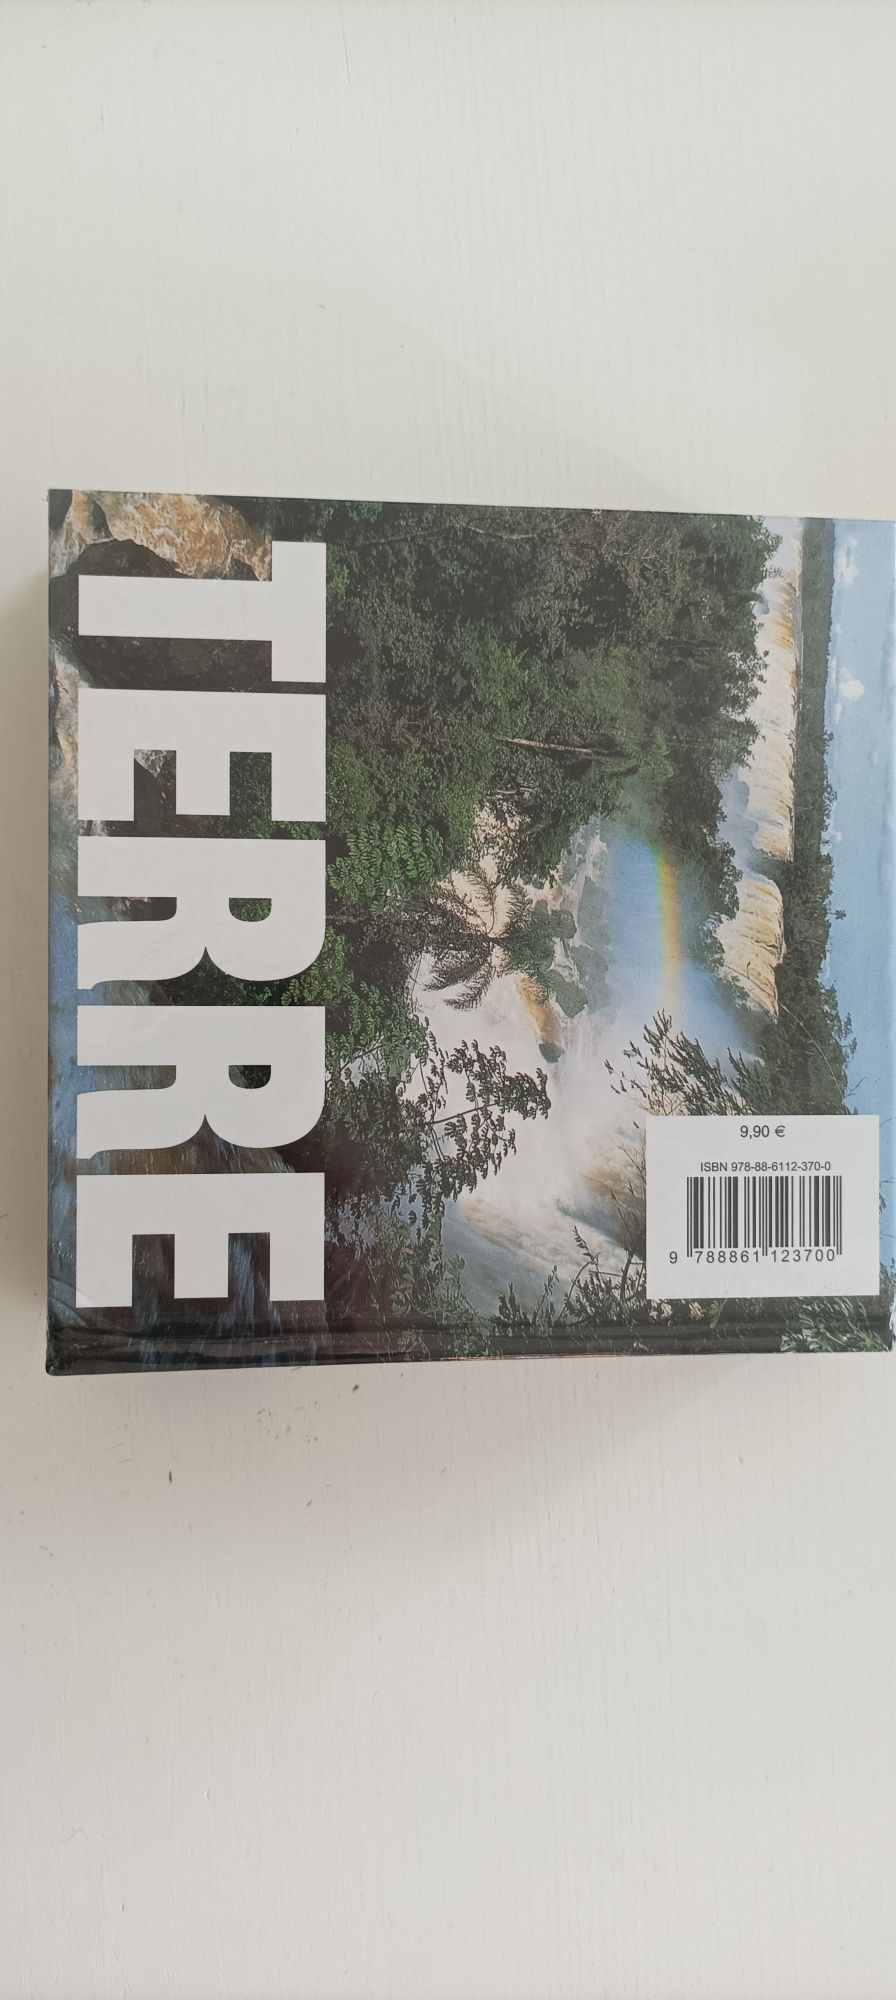 Cube book "Terre" Novo selado